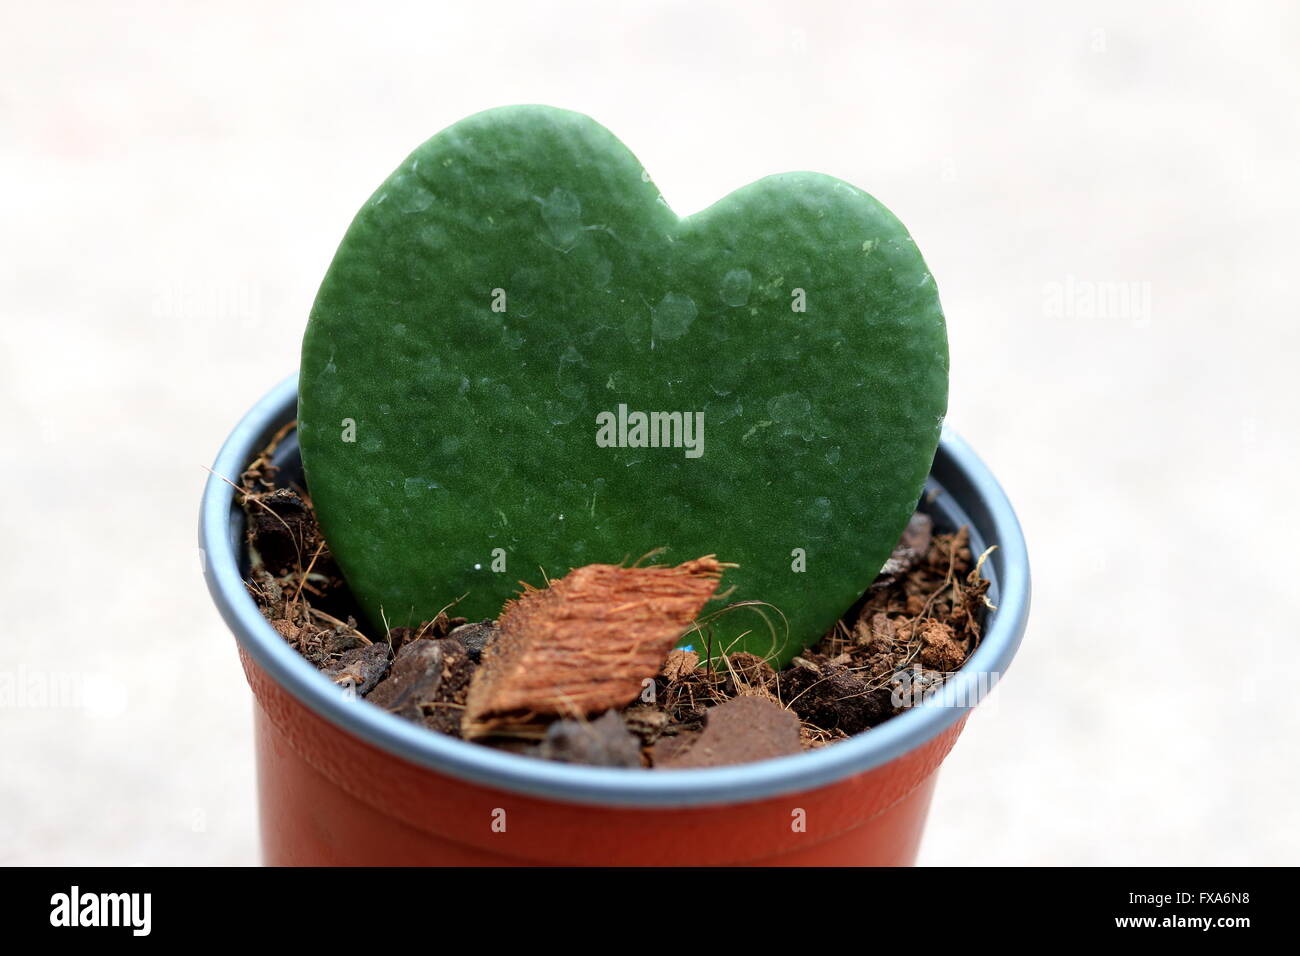 Schließen Sie herauf Bild der Liebe Herz geformt saftigen genannt Hoya Kerrii oder bekannt als Sweetheart Hoya, The Sweetheart Valentine Hoya Stockfoto